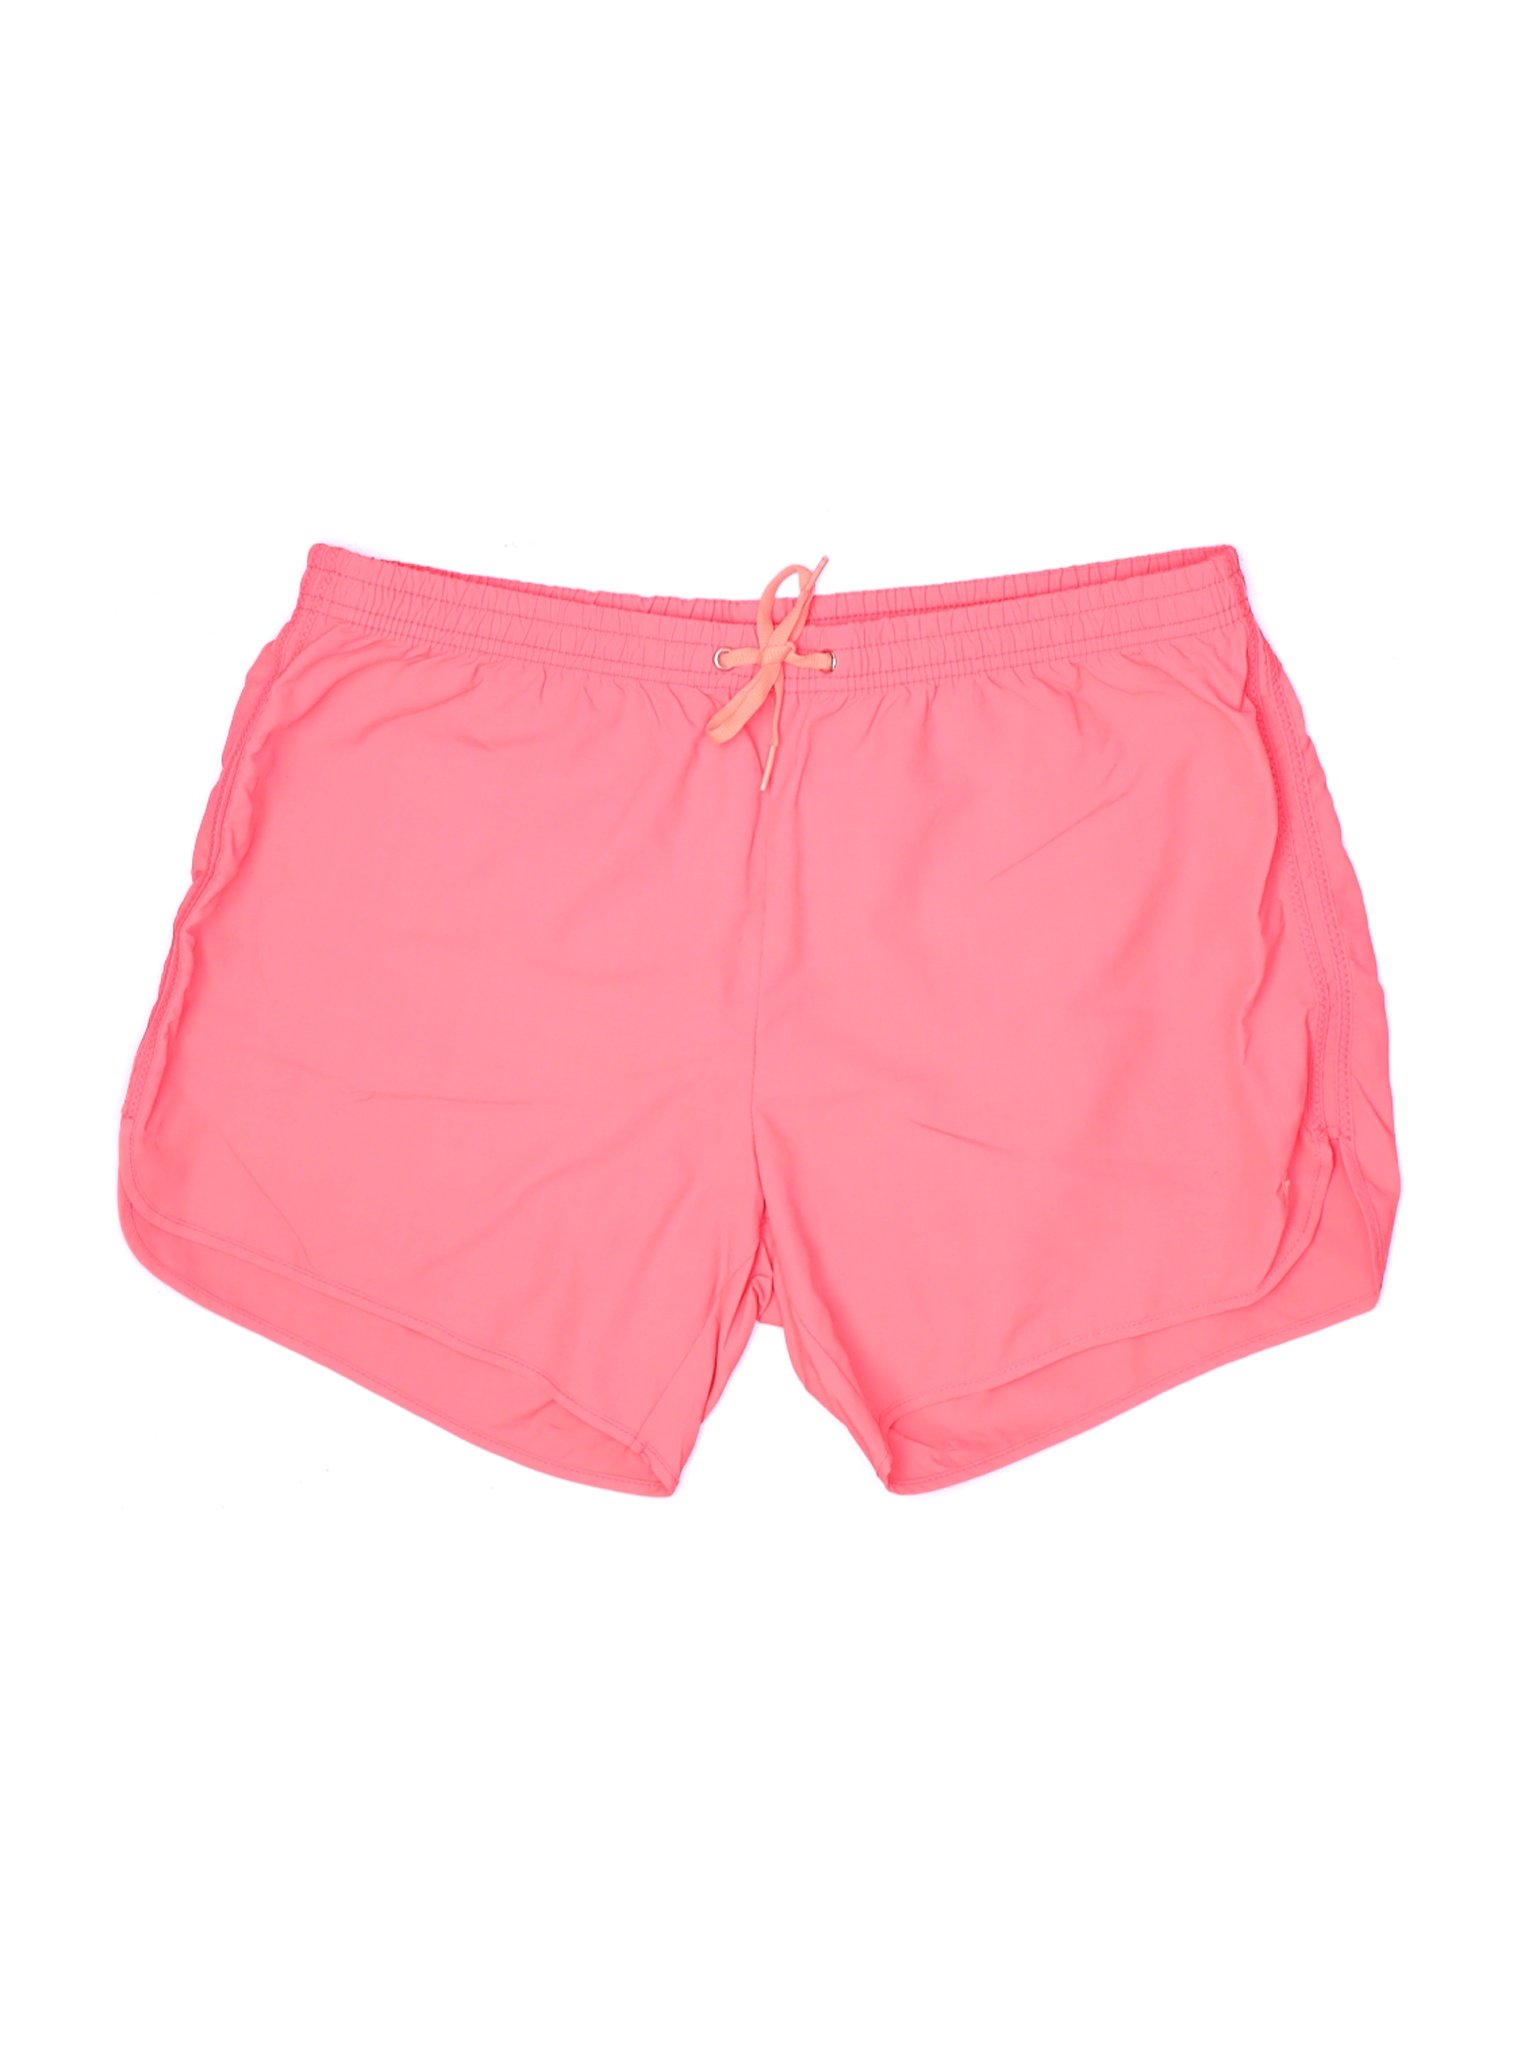 Billabong Women Pink Board Shorts 14 | eBay